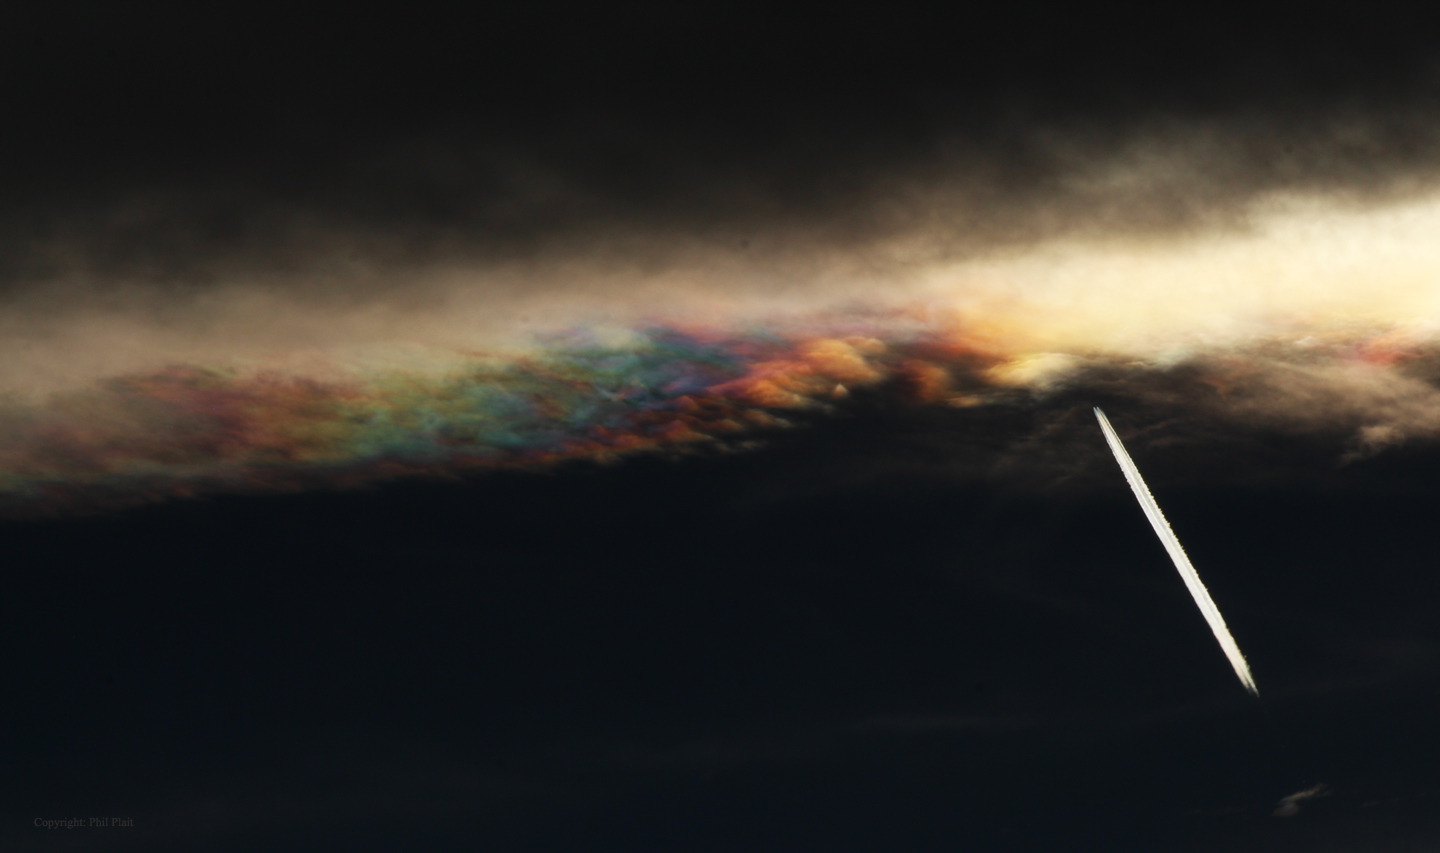 APOD: 2014 October 29 - Iridescent Cloud Edge Over Colorado